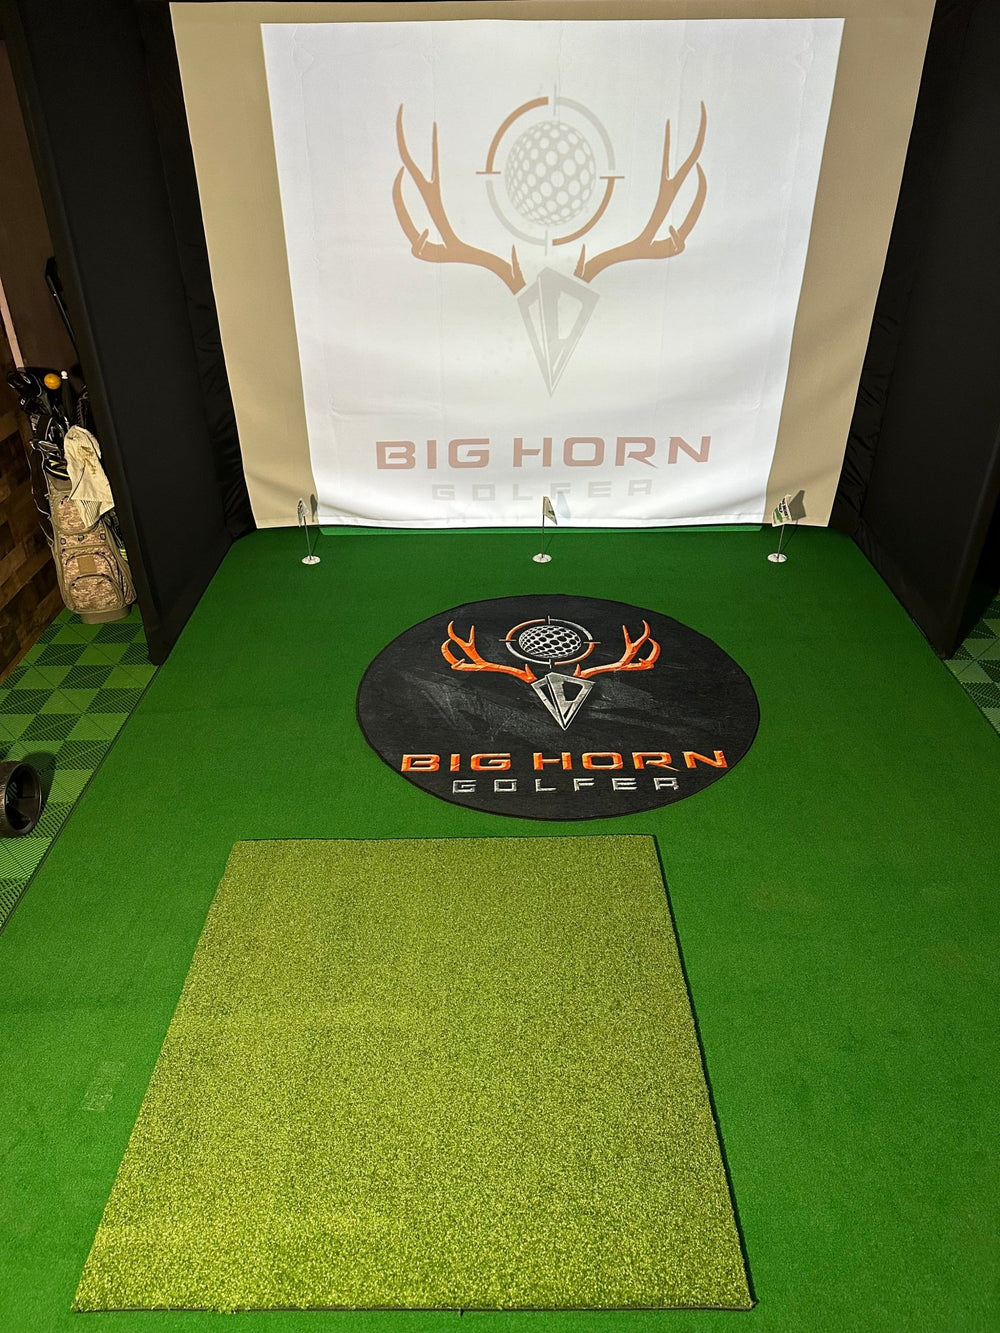 Monster Mat by SafePlay Golf - Big Horn Golfer